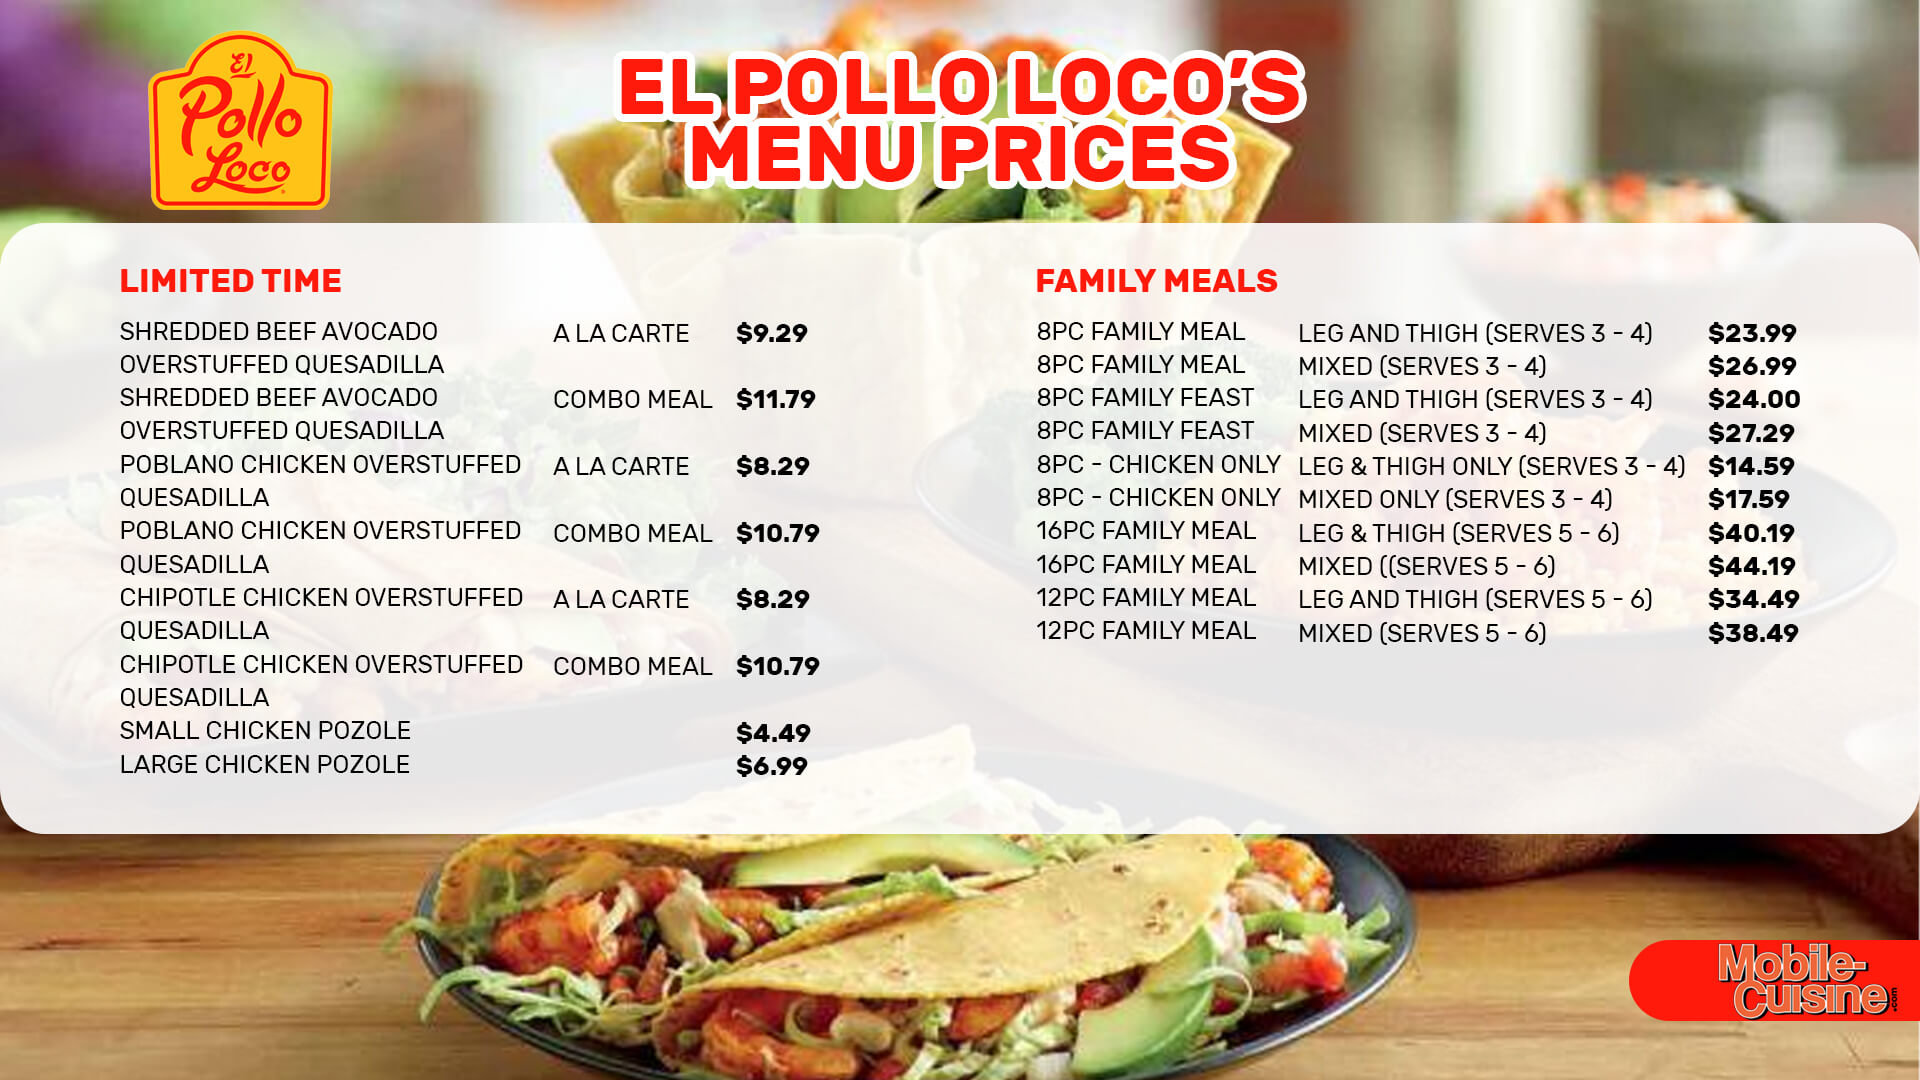 El Pollo Loco menu prices